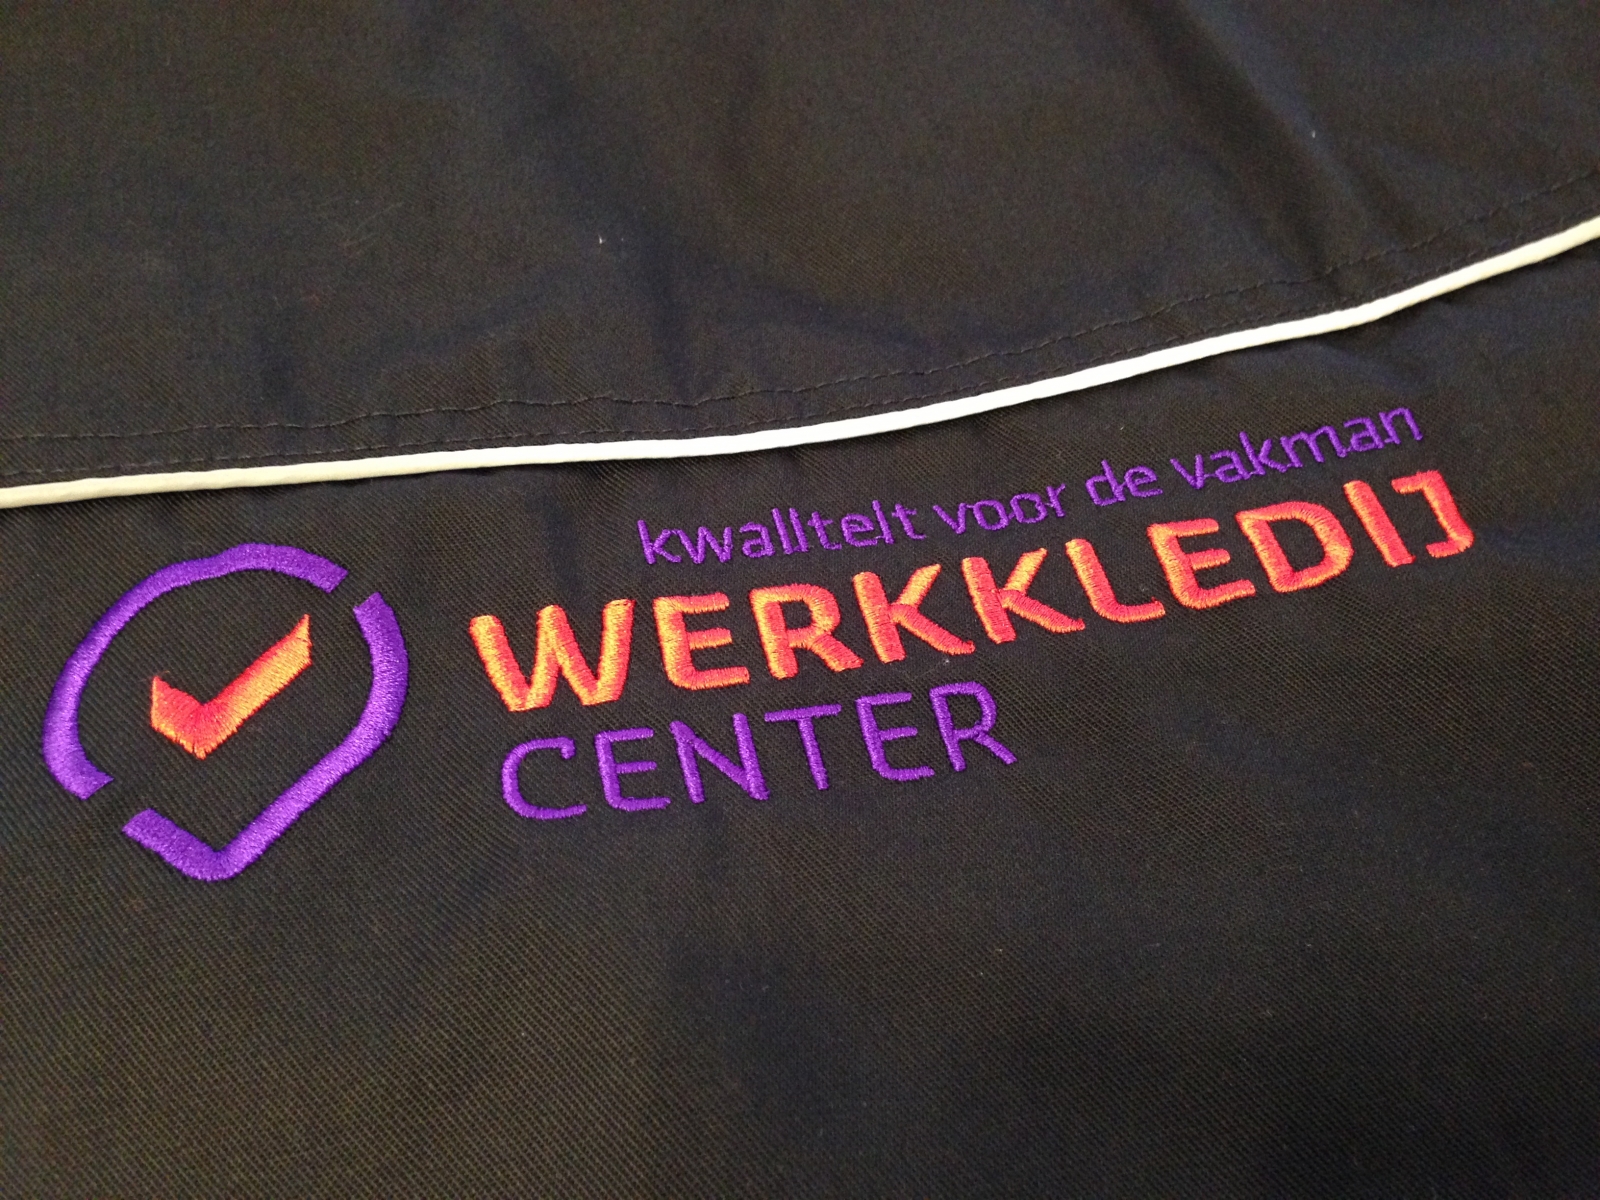 Borduren van uw logo op uw werk- en veiligheidskledij, dat kan bij Werkkledij Center te Wortegem.